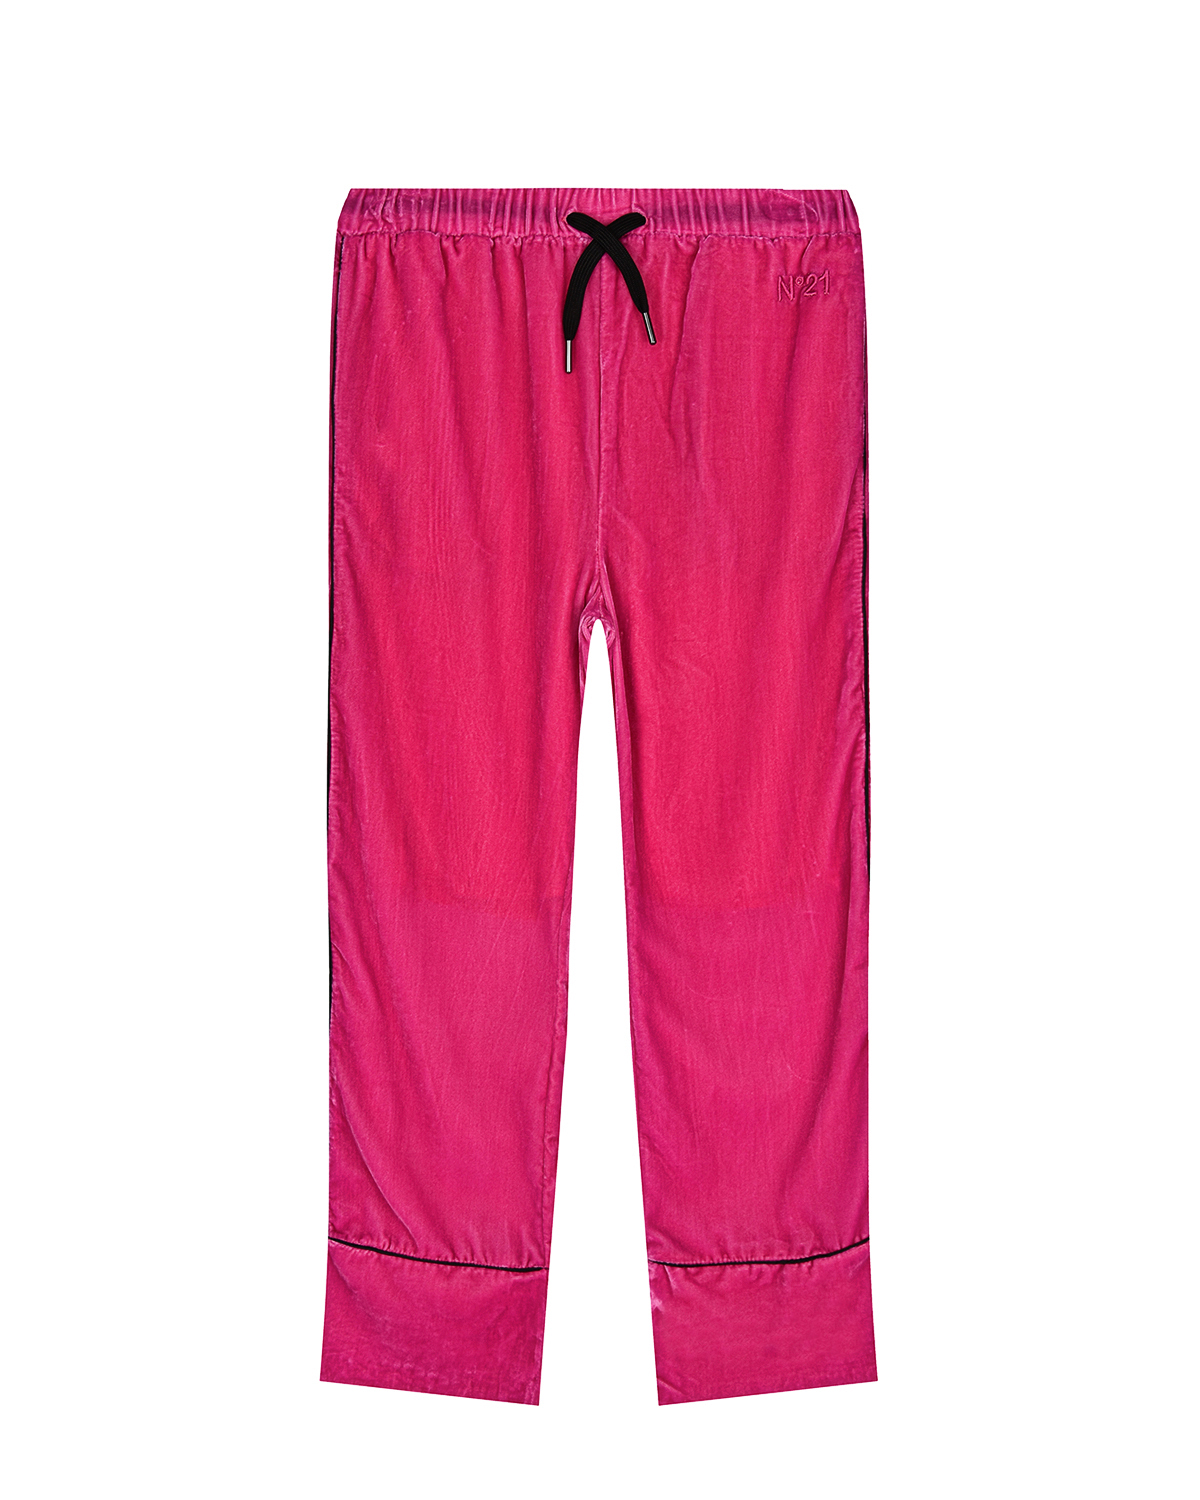 Вельветовые брюки цвета фуксии No. 21 детские, размер 164